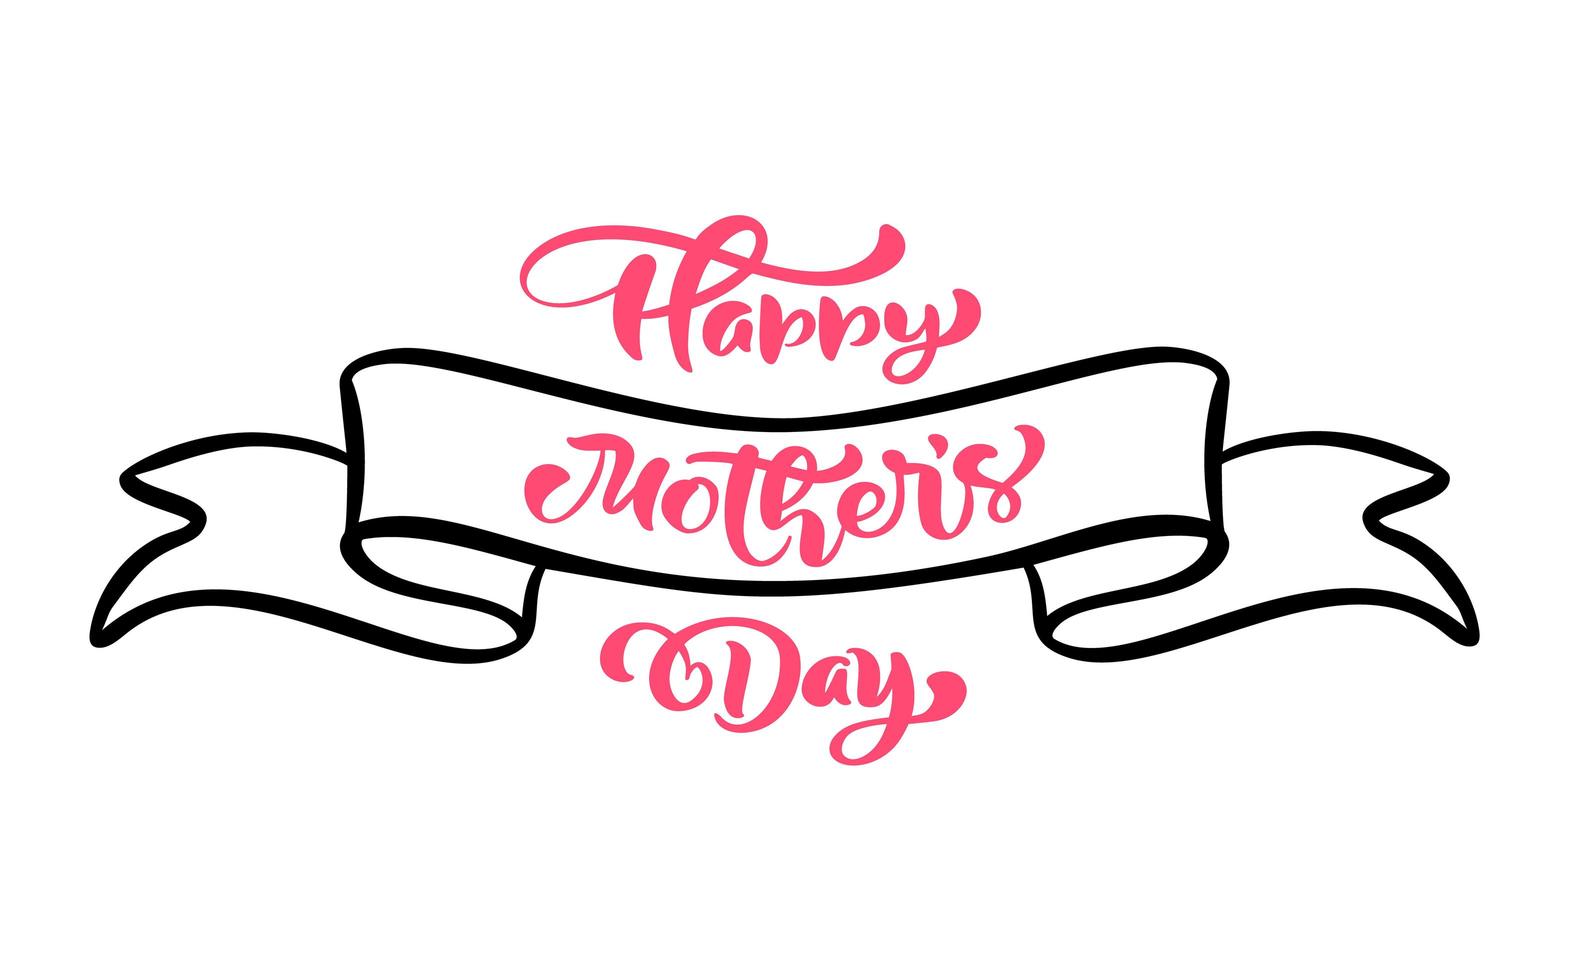 Feliz día de la madre texto de letras a mano en cinta de vector stilyzed. ilustración buena para tarjetas de felicitación, carteles o pancartas, icono de postal de invitación